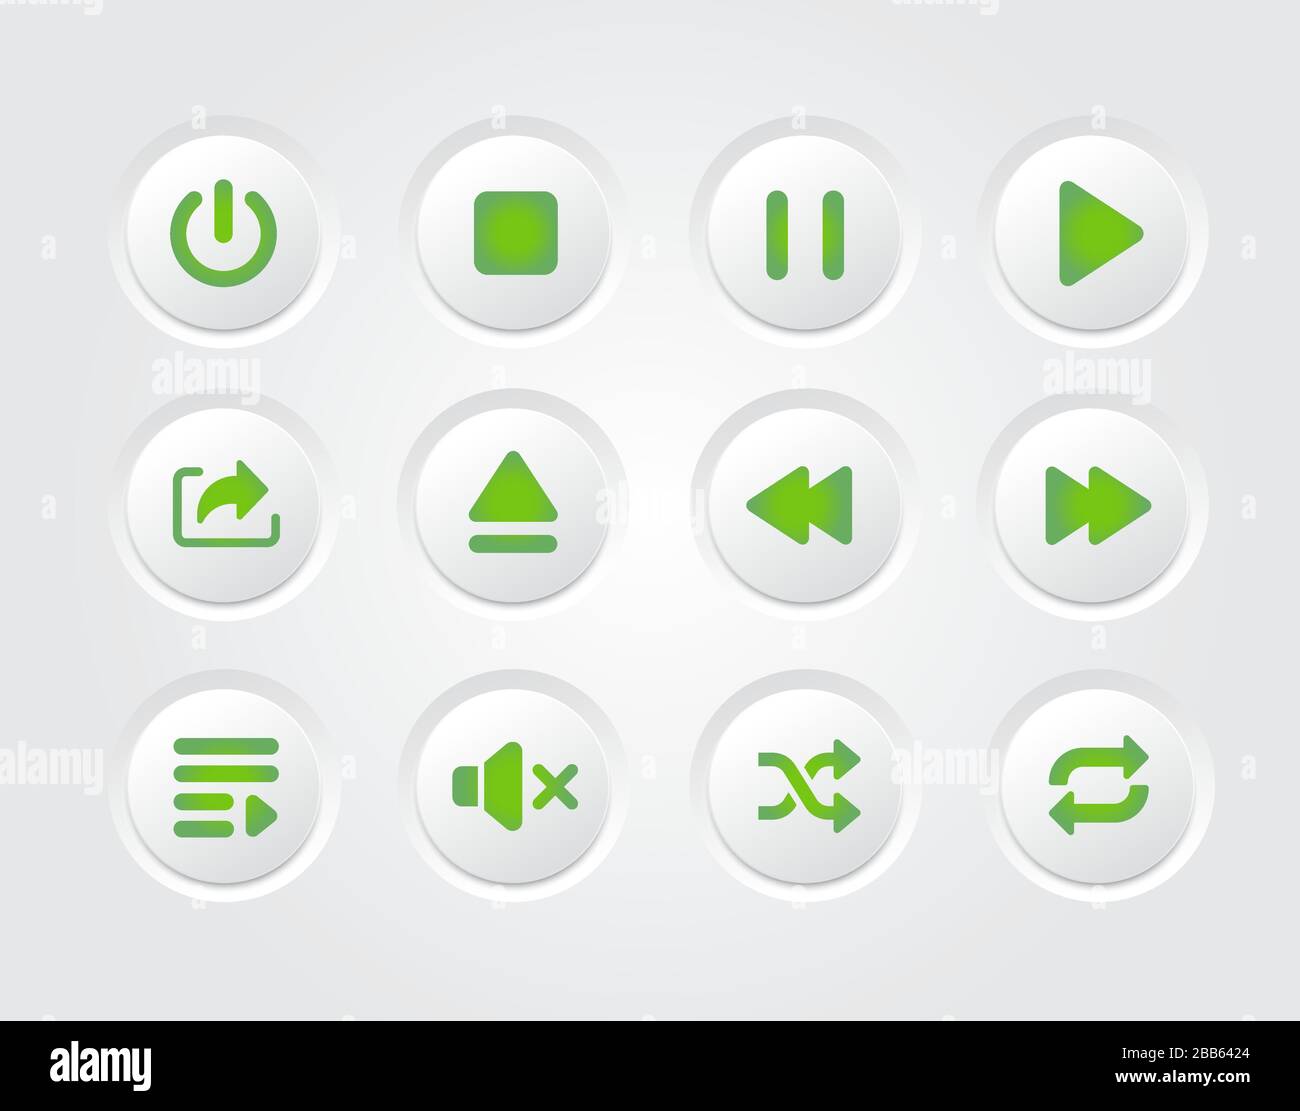 Die Icon Collection des grünen Gradientendesigns für vektorisolierte Musikplayer mit flacher Oberfläche Stock Vektor